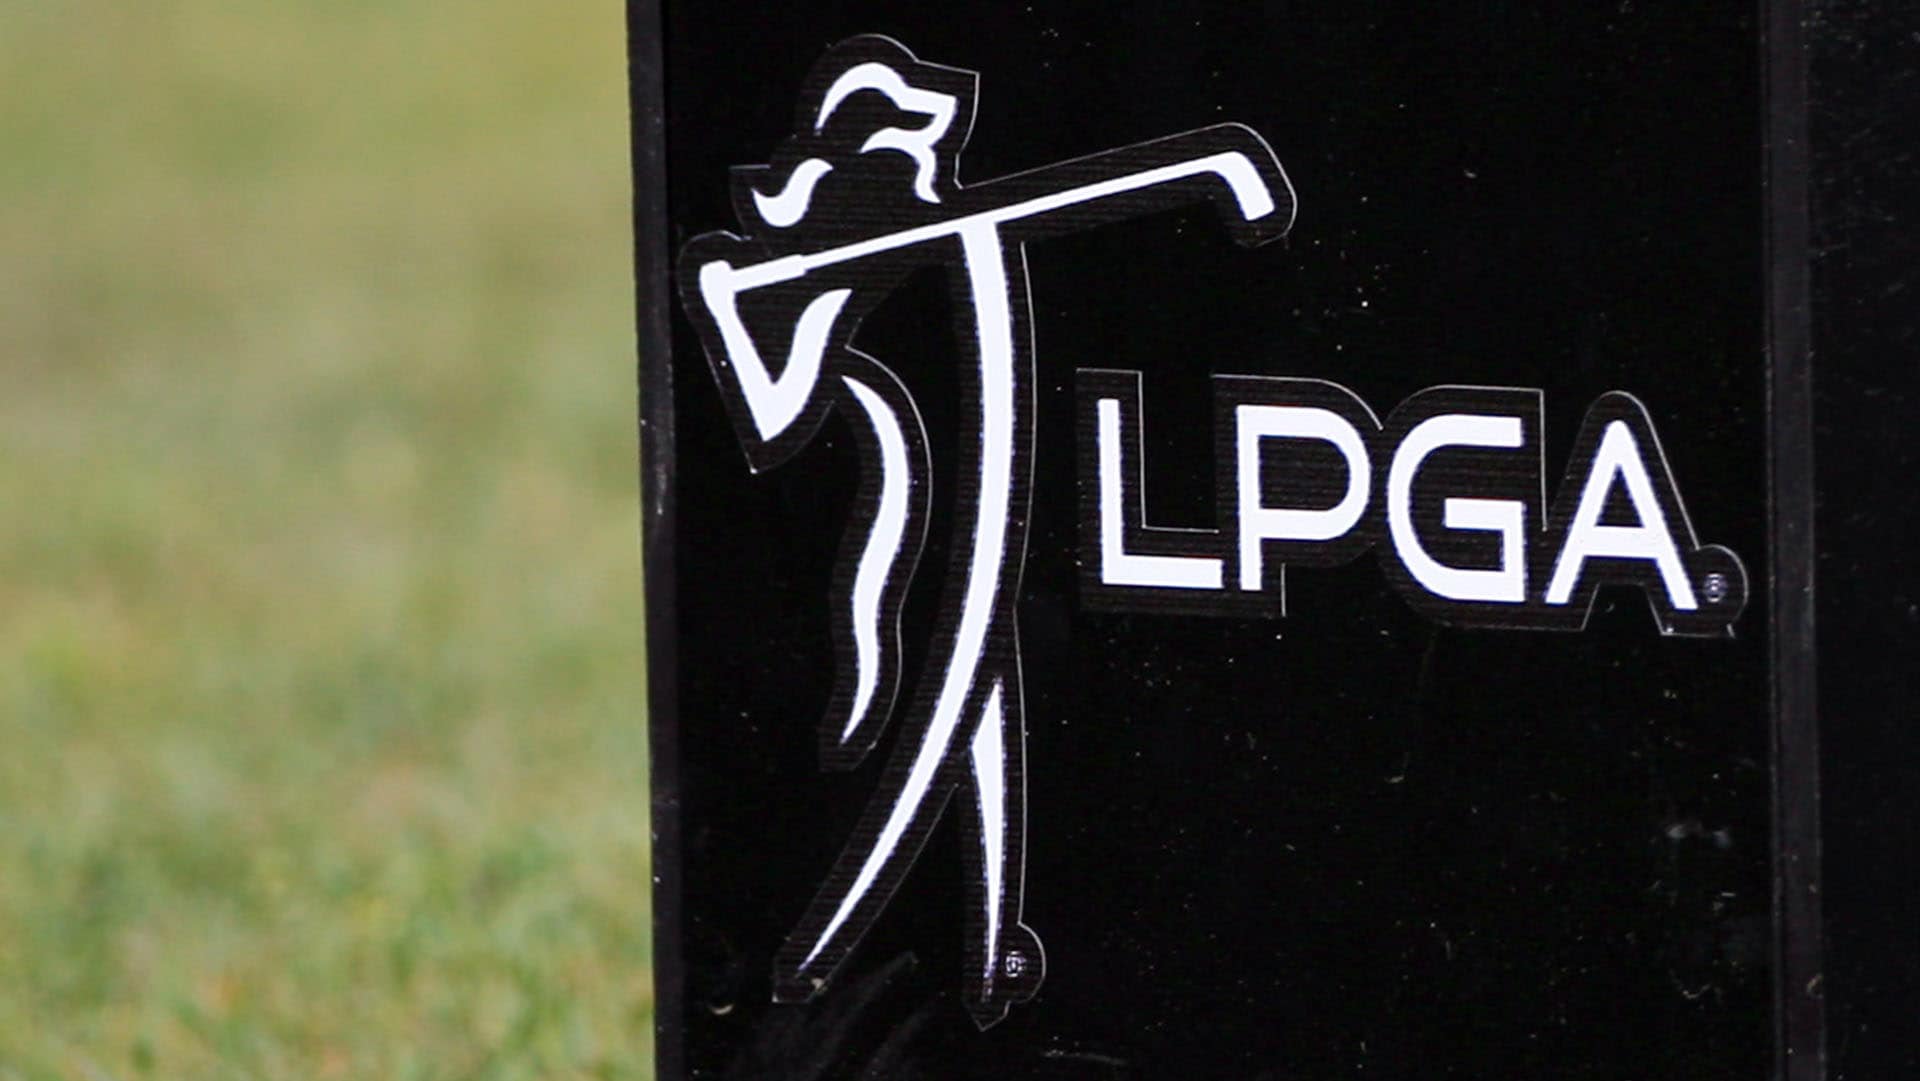 LPGA on KLPGA: ‘Rankings remain paused indefinitely’